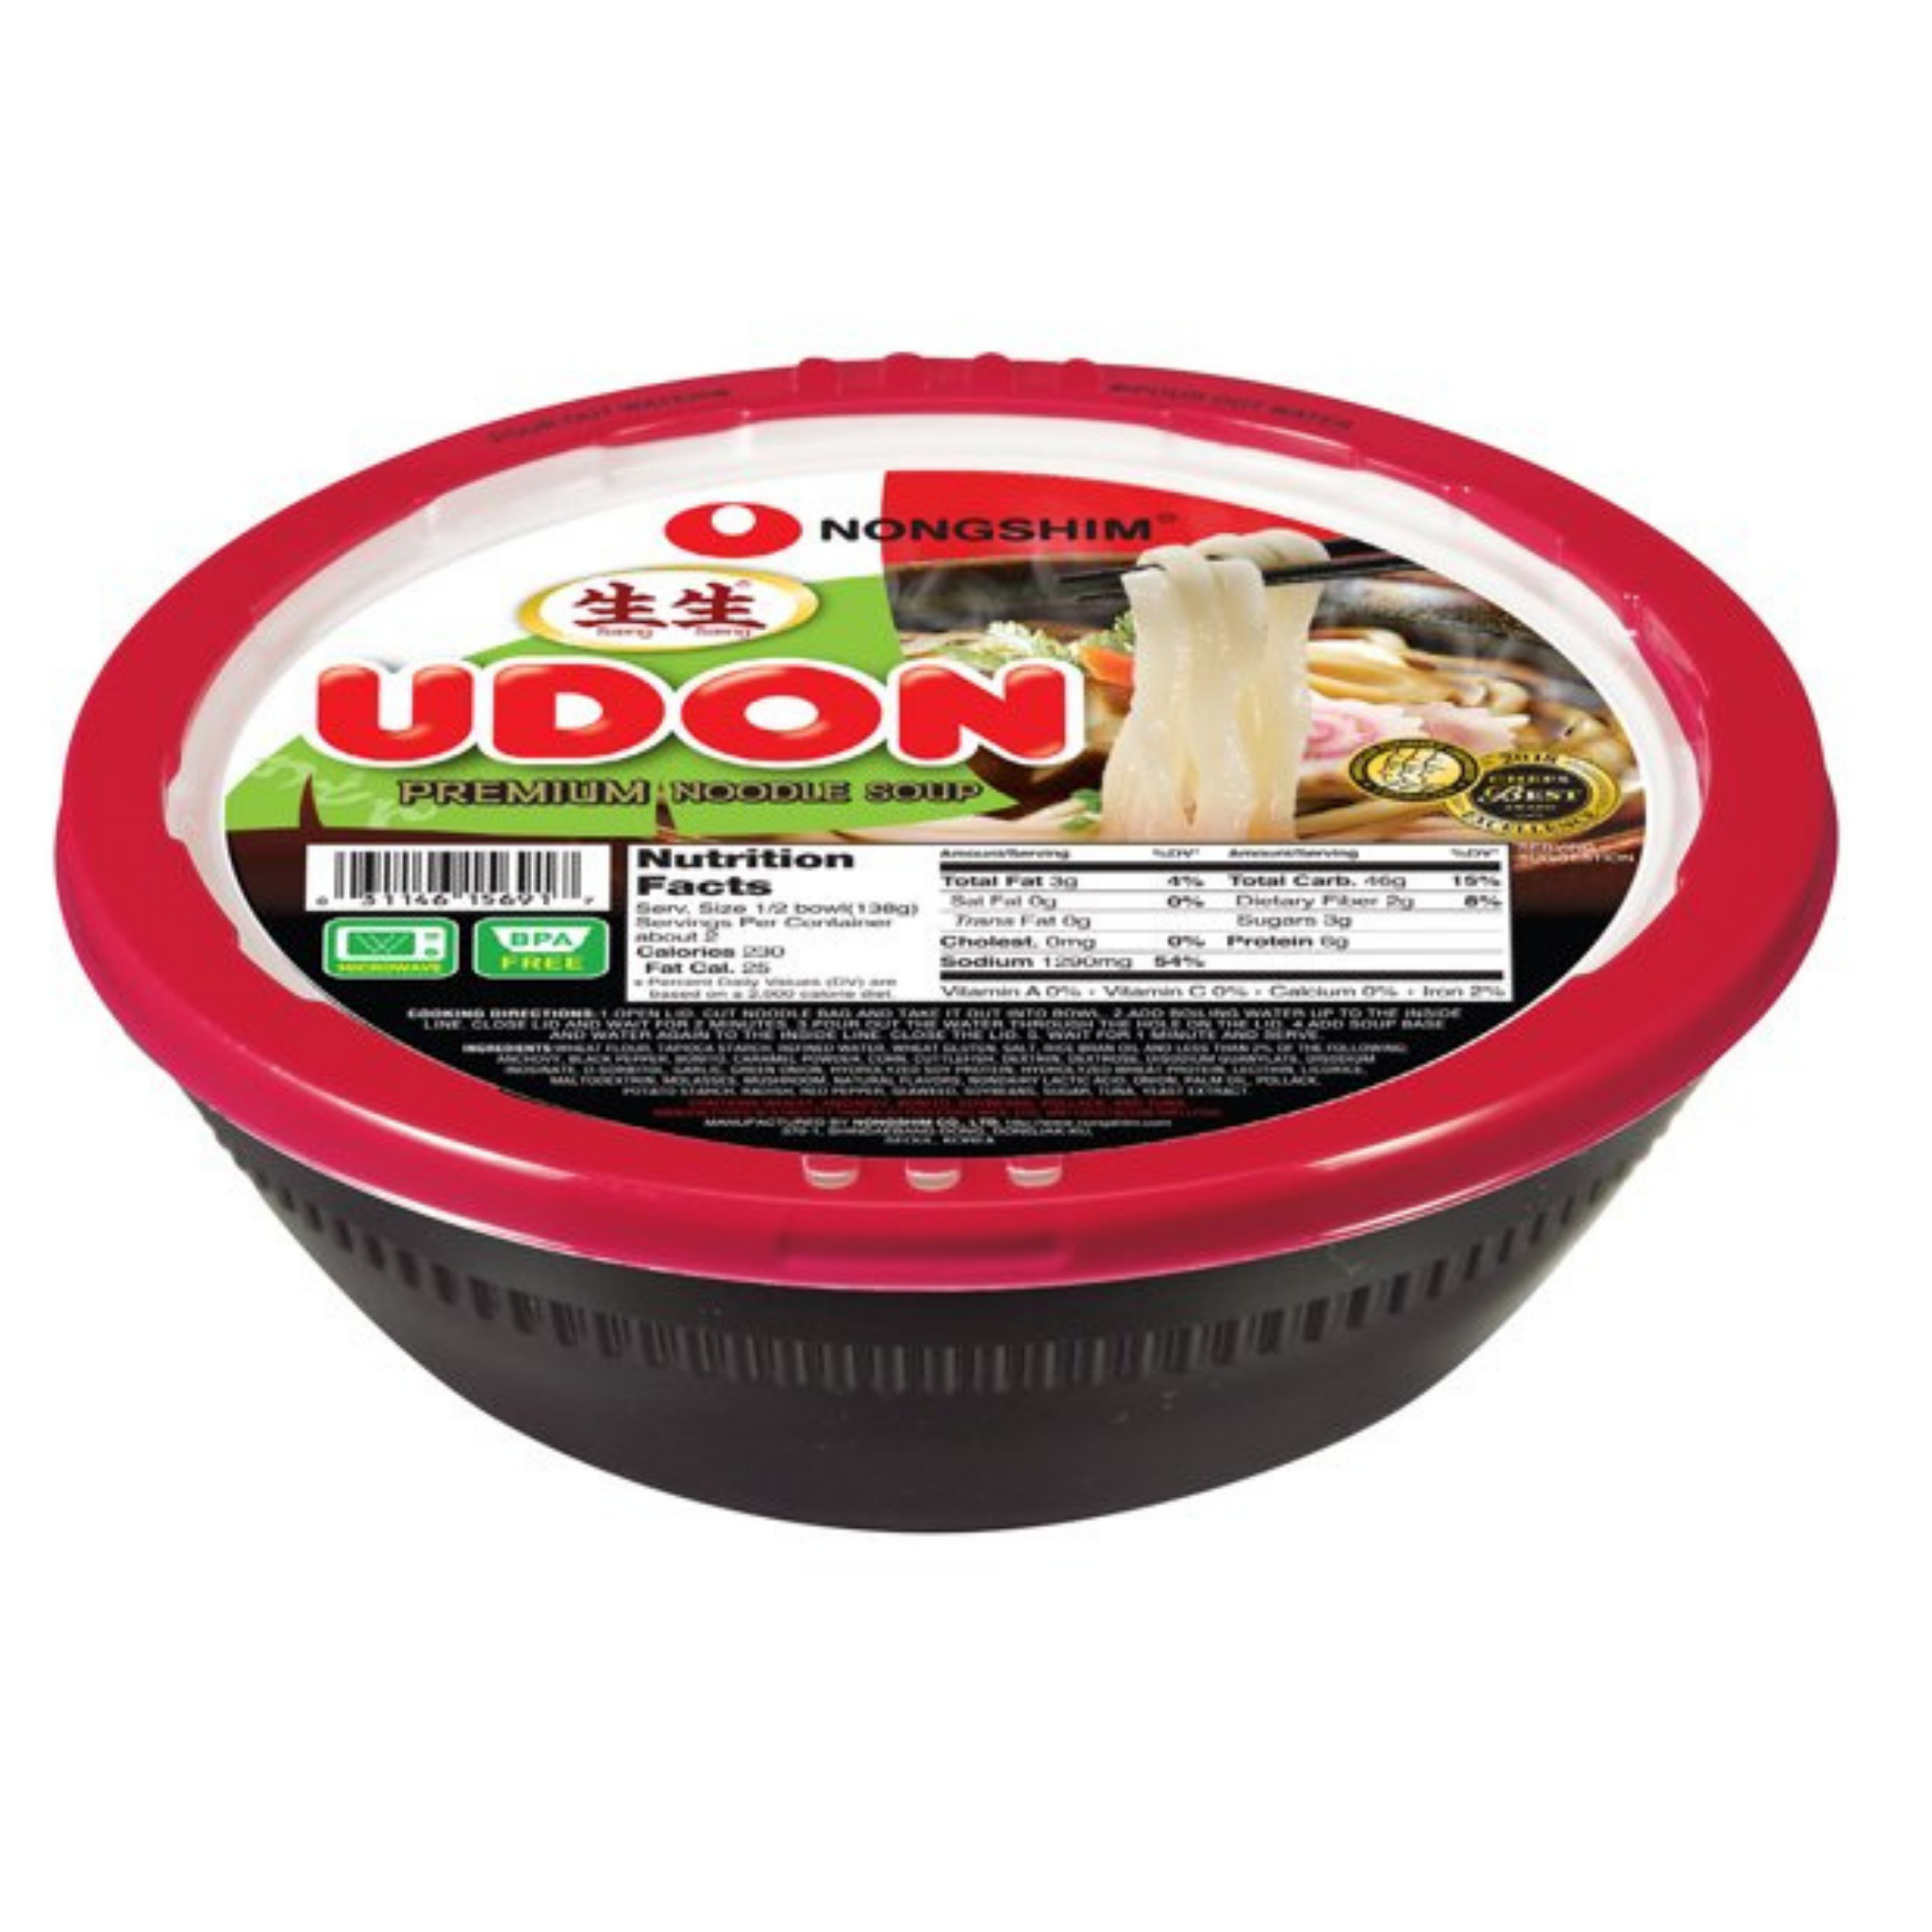 Nongshim Udon Noodles